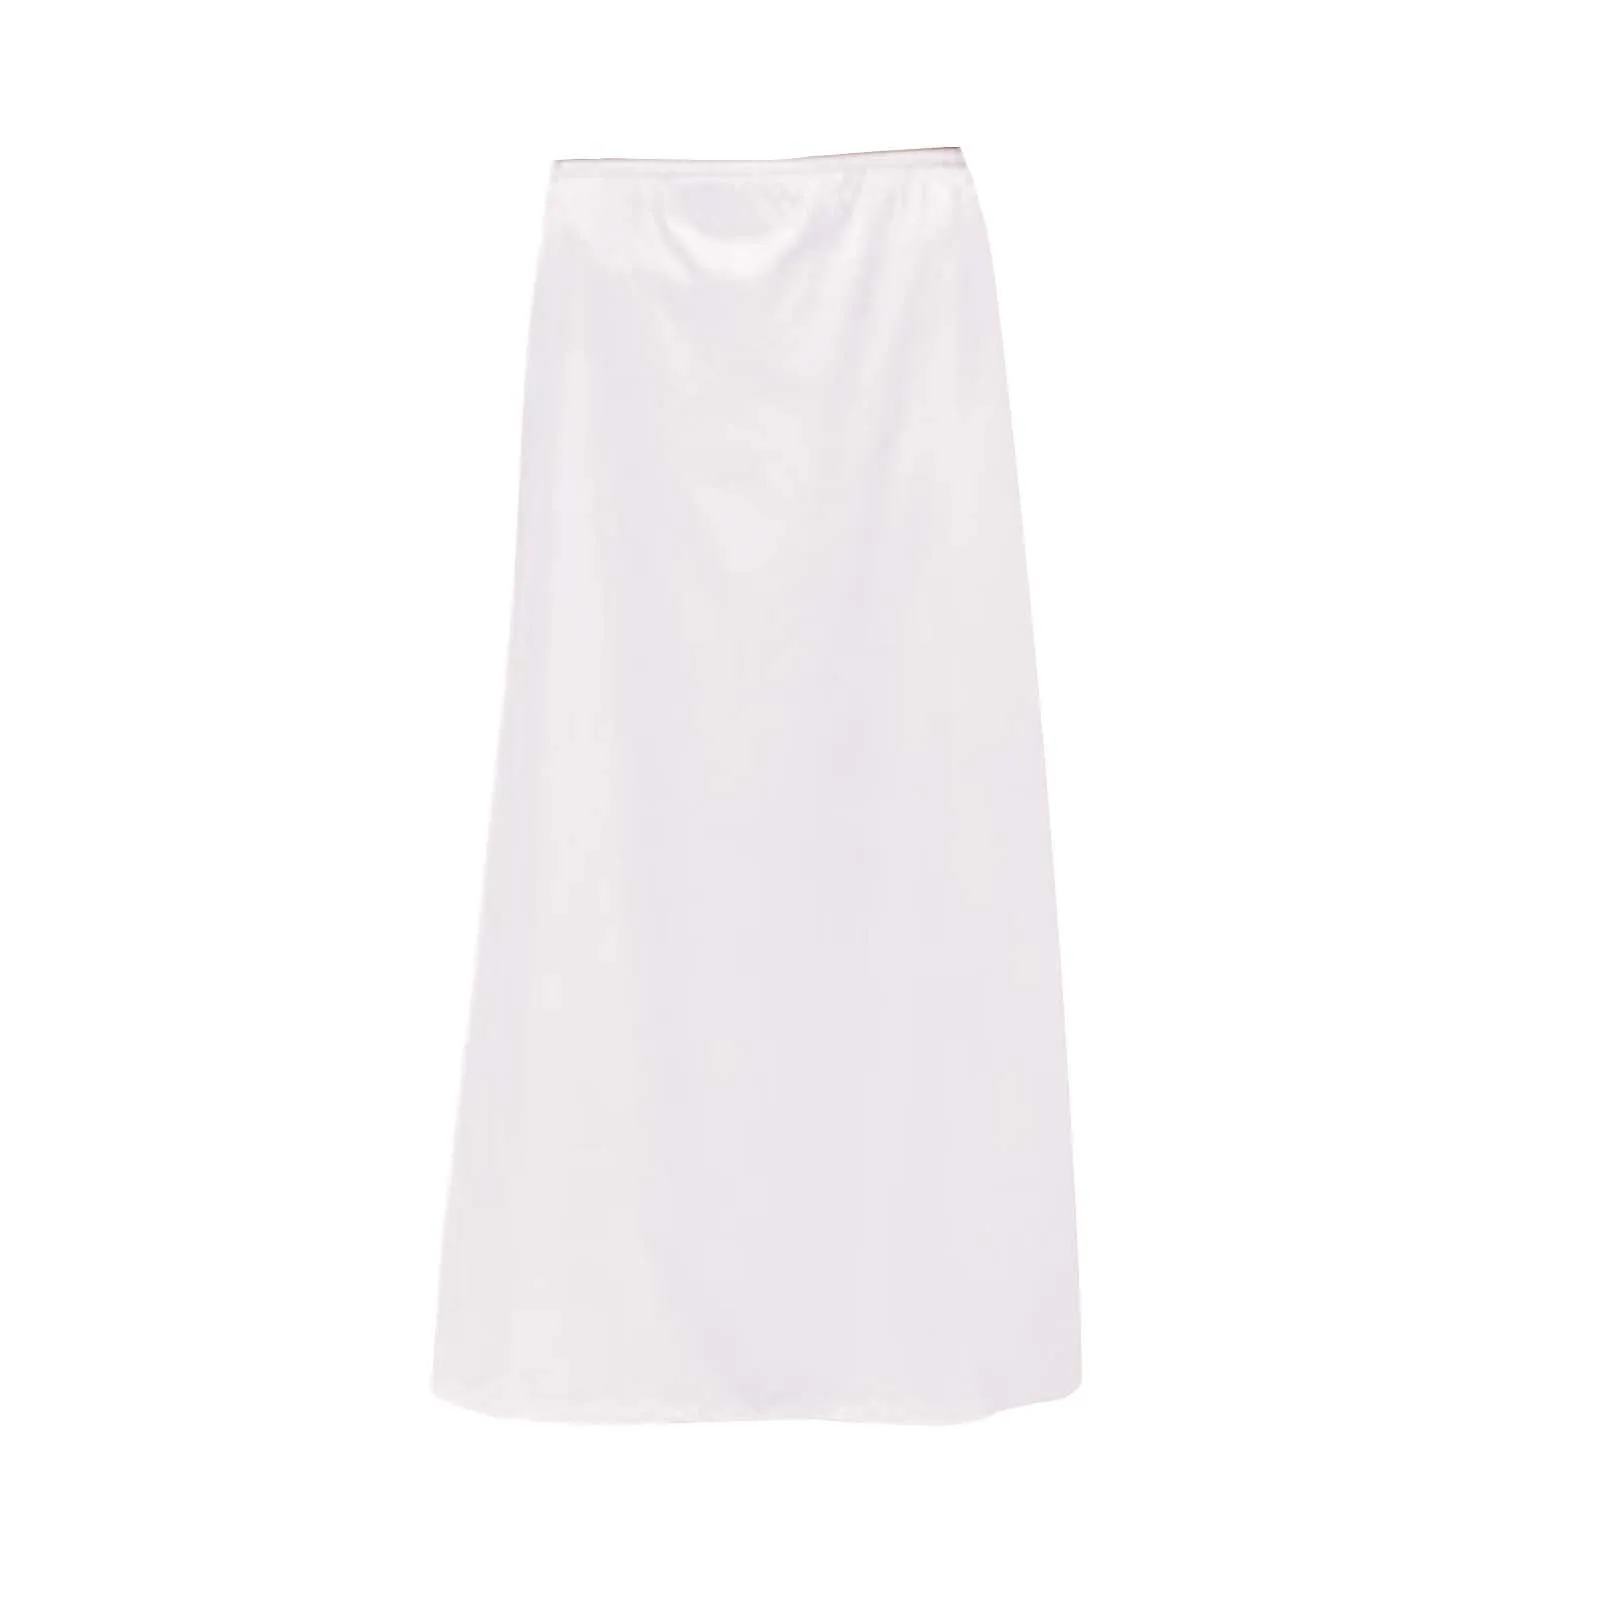 

Extra Long Twin Bed Skirt Women's Solid Color Lace Nightdress Skirt Porridge Skirt Tulle Skirt Long